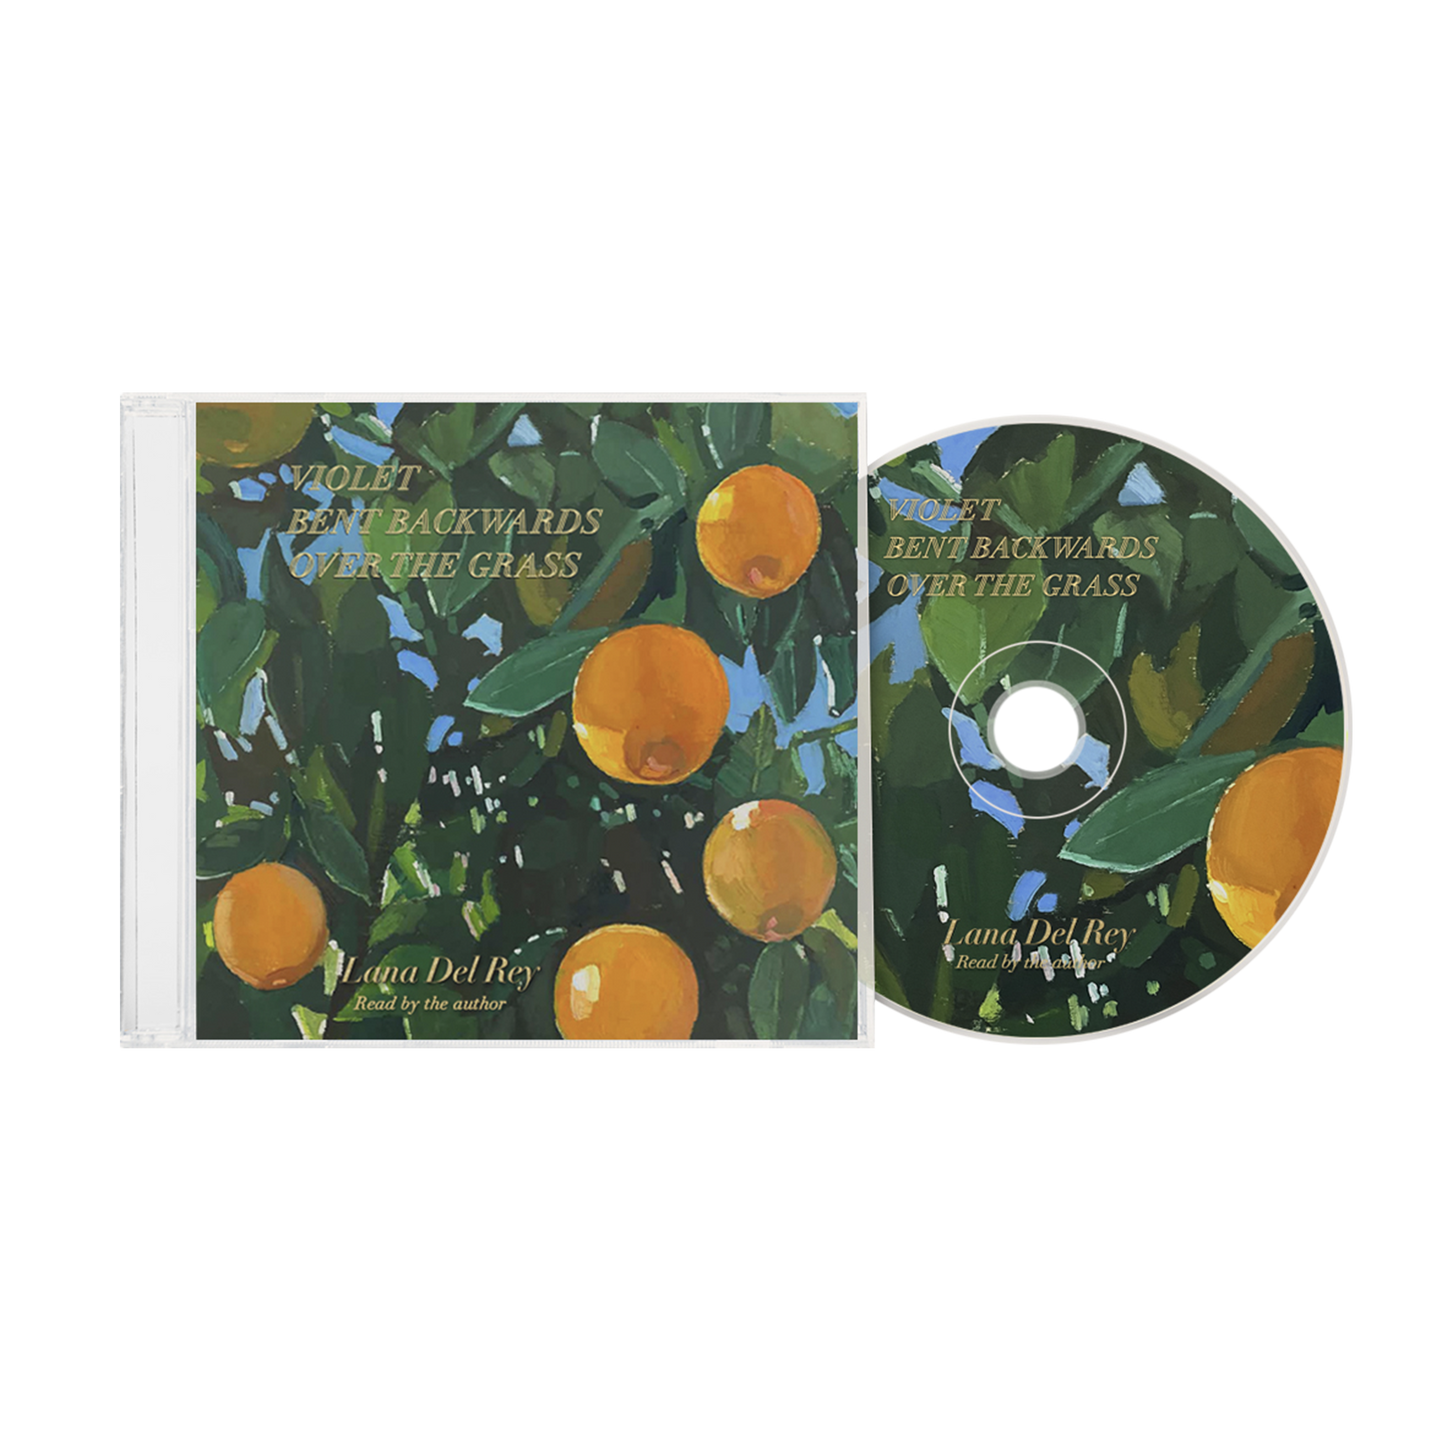 Lana Del Rey: Violet Bent Backwards Over The Grass (Spoken Word) cd